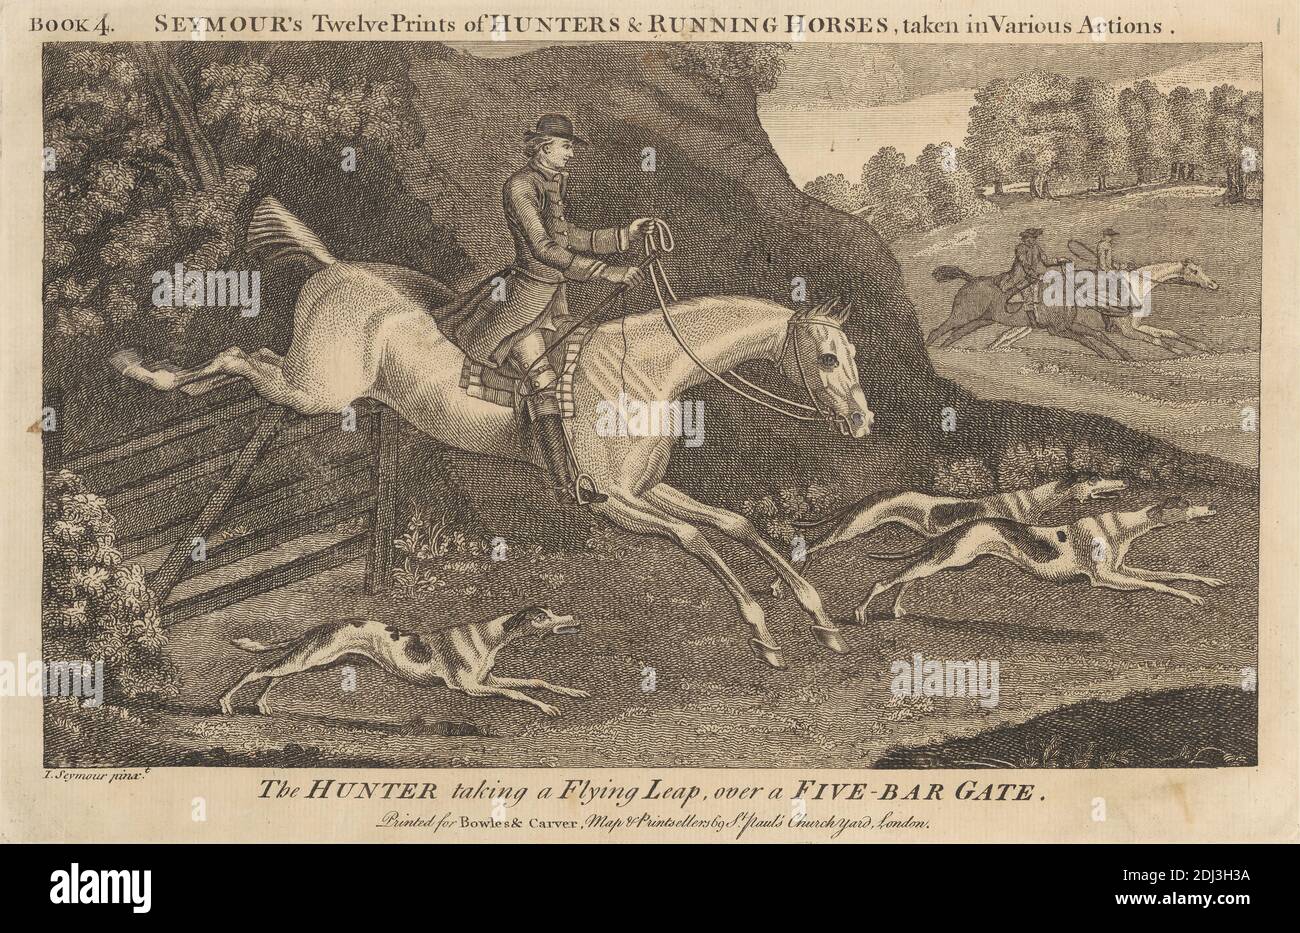 Los Doce grabados de cazadores y caballos corriendo de Seymour, tomados en varias acciones, James Seymour, 1702–1752, British, c. 1750, Grabado, Hoja: 6 3/4 x 10 1/2 pulg. (17.1 x 26,7 cm Foto de stock